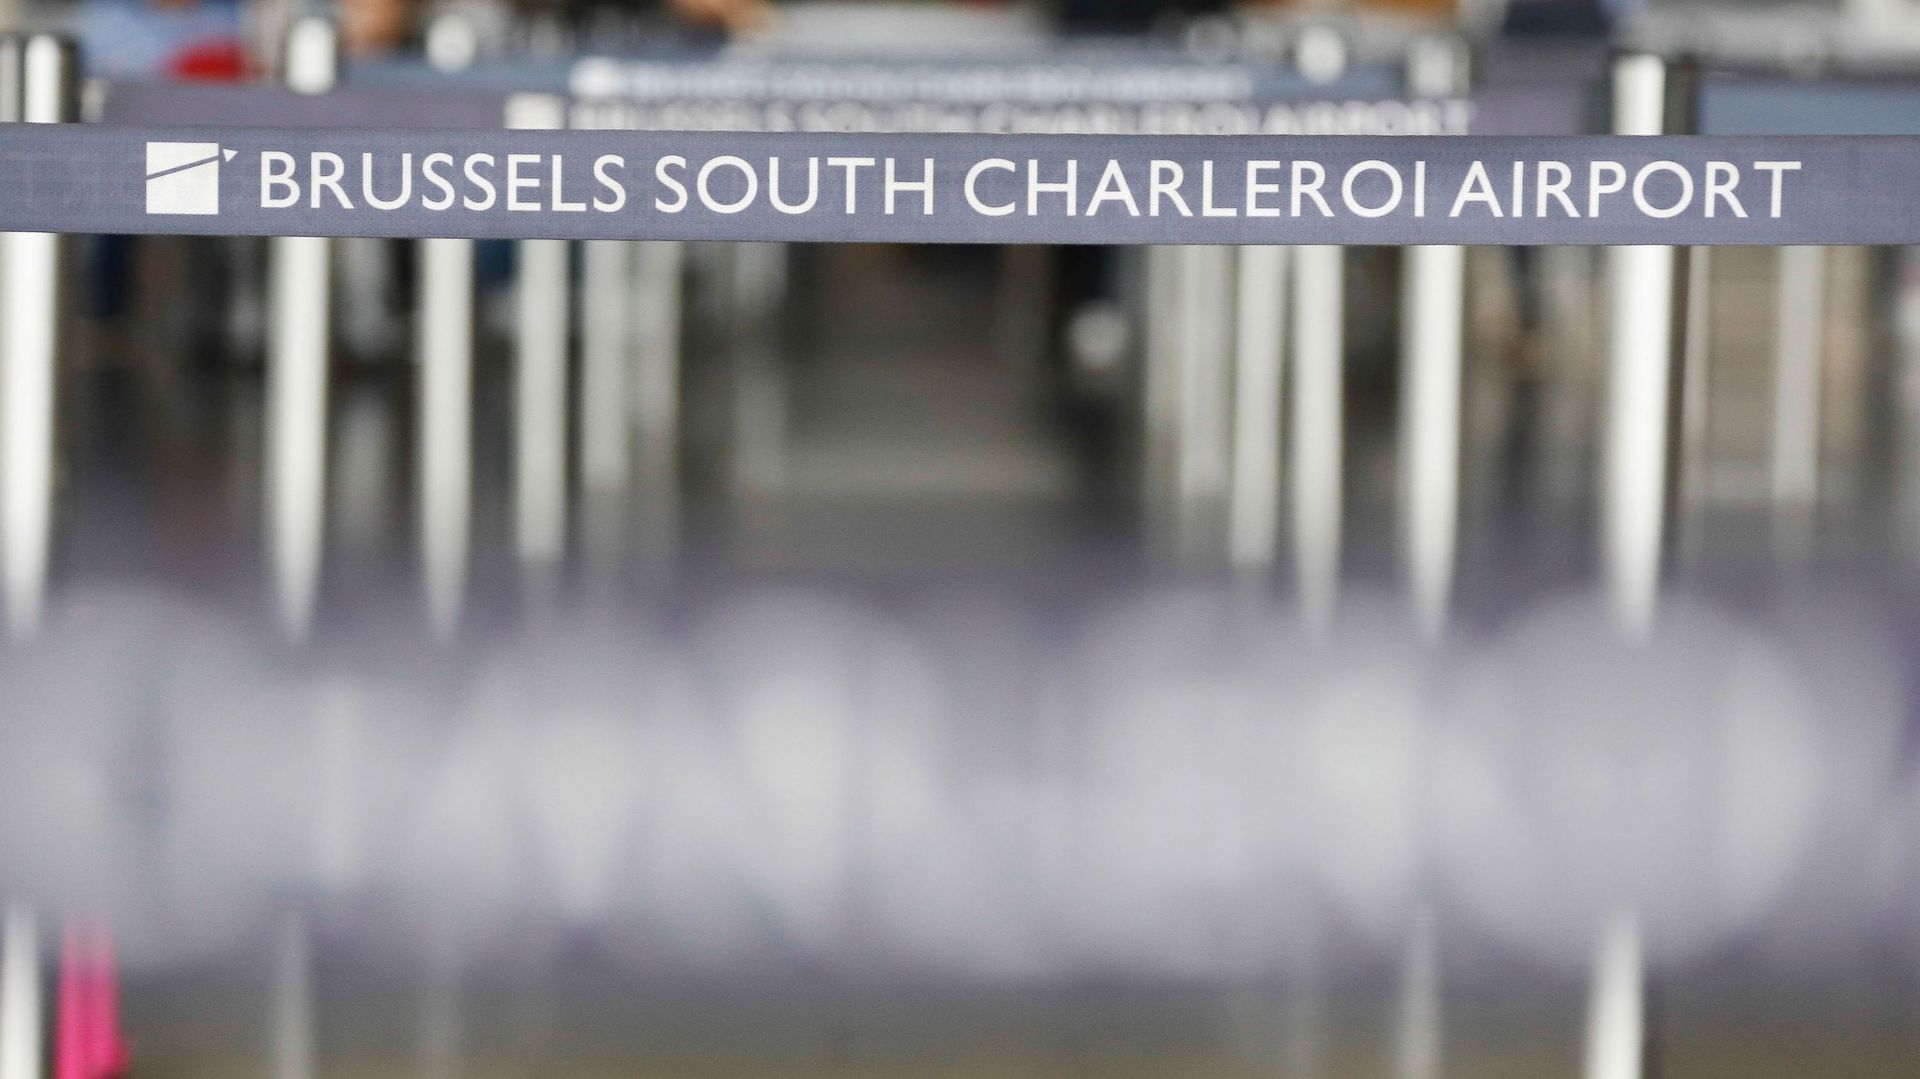 Décès d'un passager à l'aéroport de Charleroi en 2018: le PS demande au ministre de l'Intérieur de faire toute la lumière